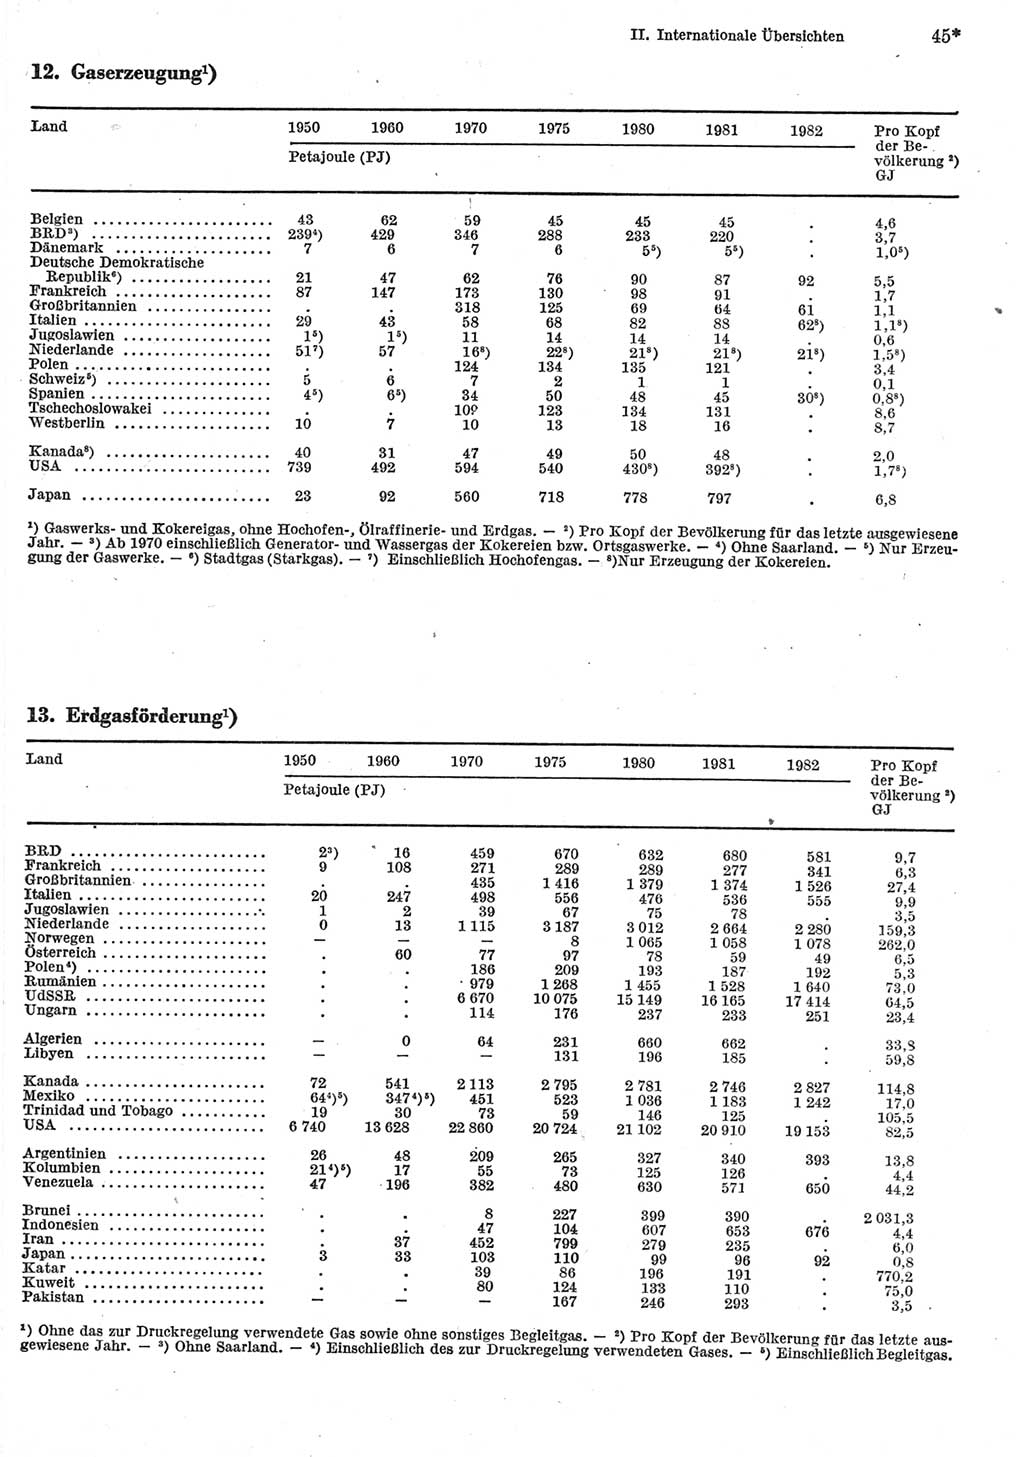 Statistisches Jahrbuch der Deutschen Demokratischen Republik (DDR) 1984, Seite 45 (Stat. Jb. DDR 1984, S. 45)